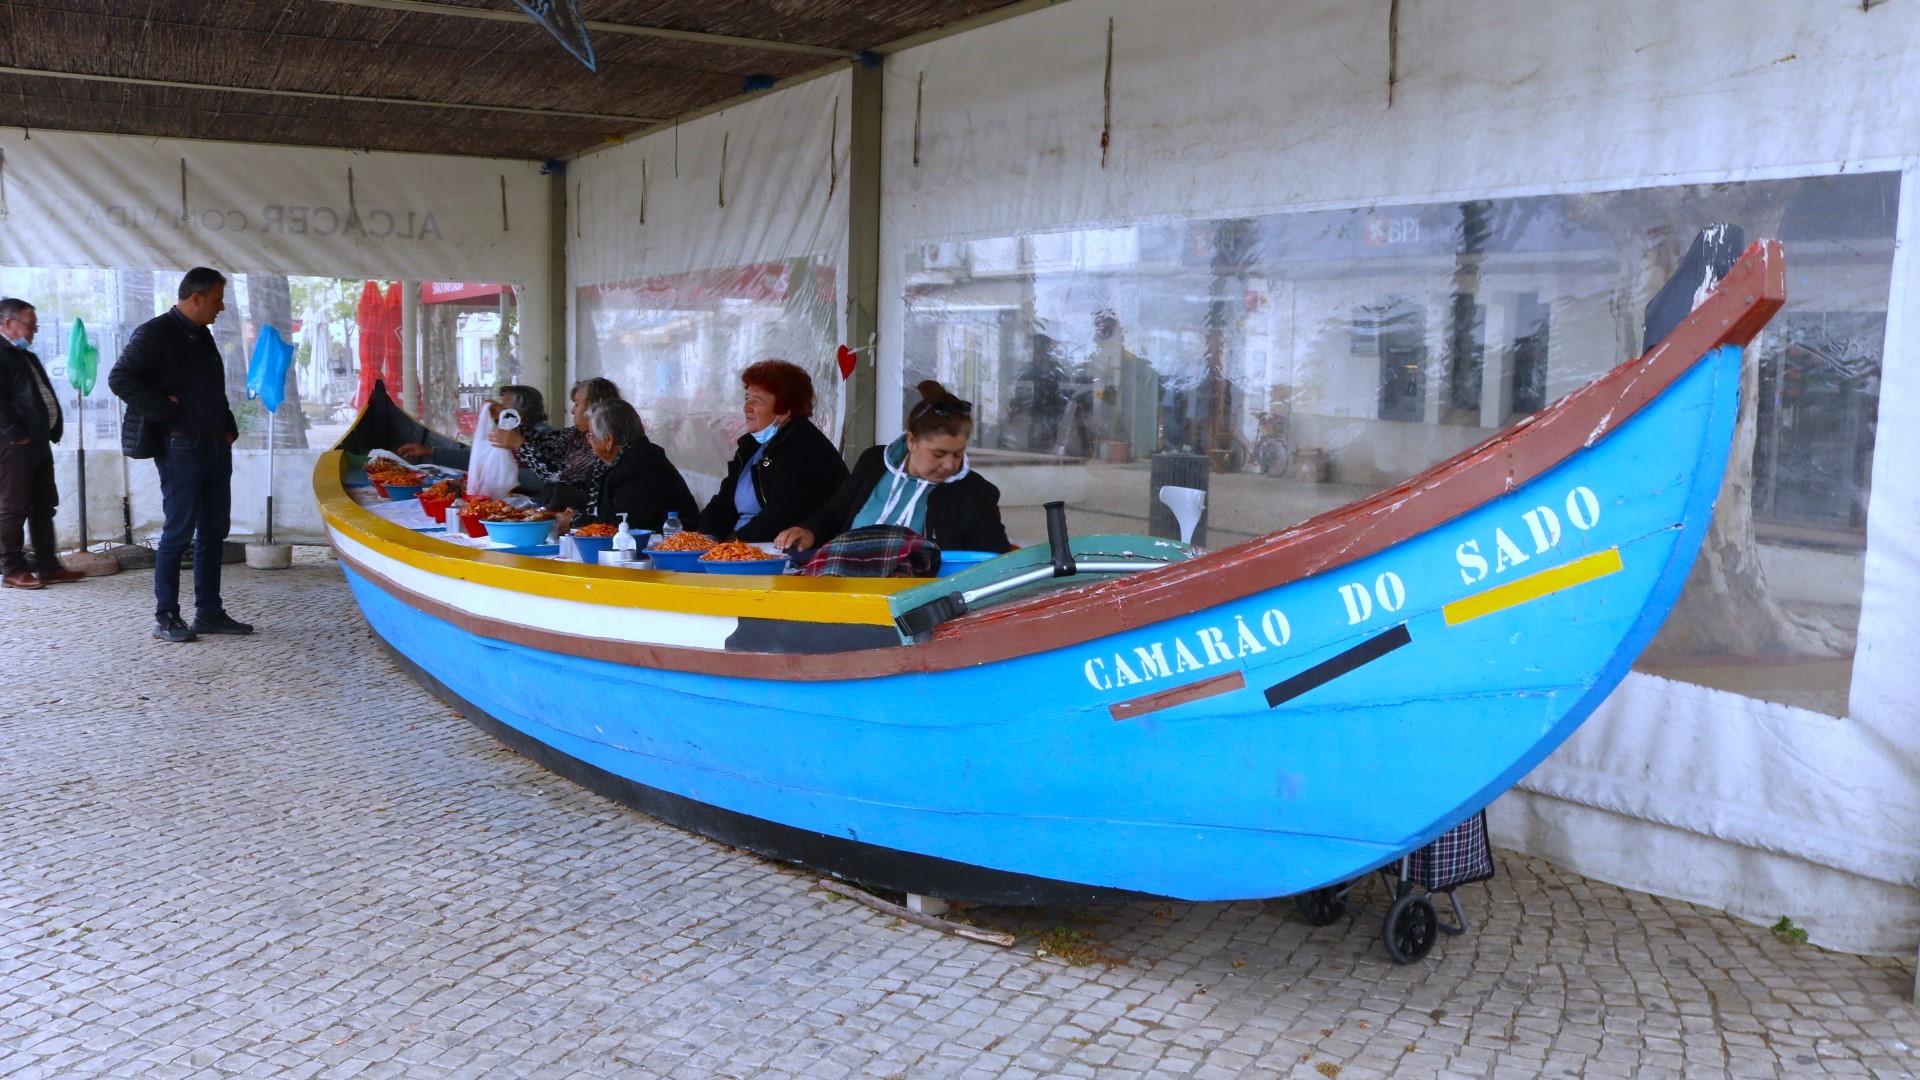 Varinas em Alcácer do Sal a venderem camarão do rio